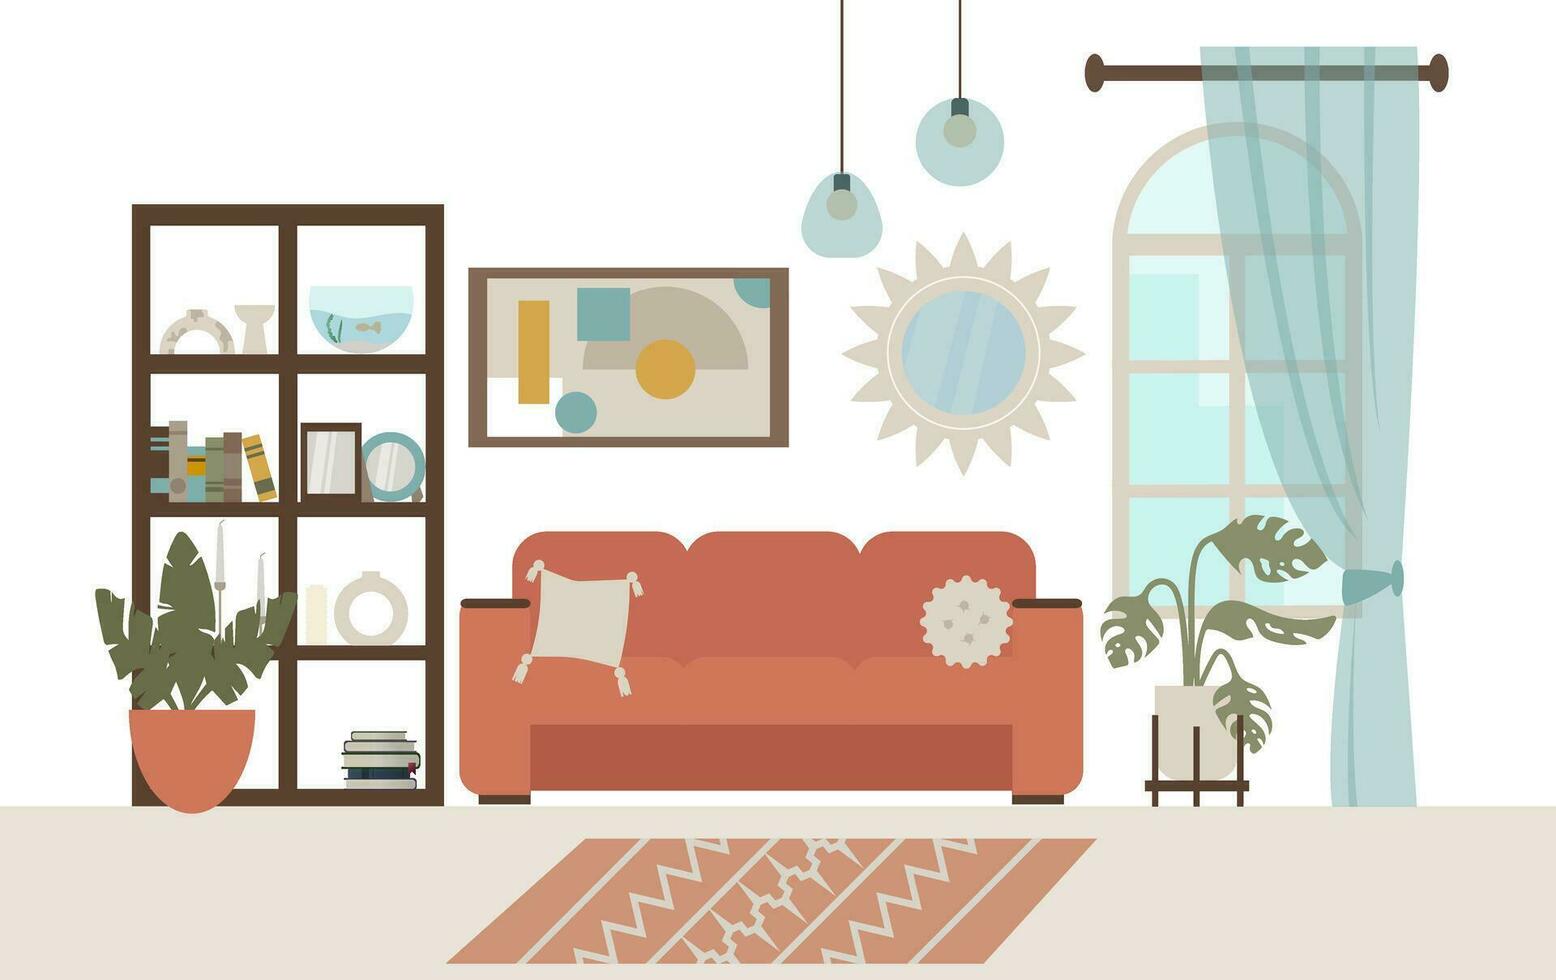 vivo habitación interior con muebles, sofá, estante para libros, plantas y decoraciones plano estilo vector ilustración.